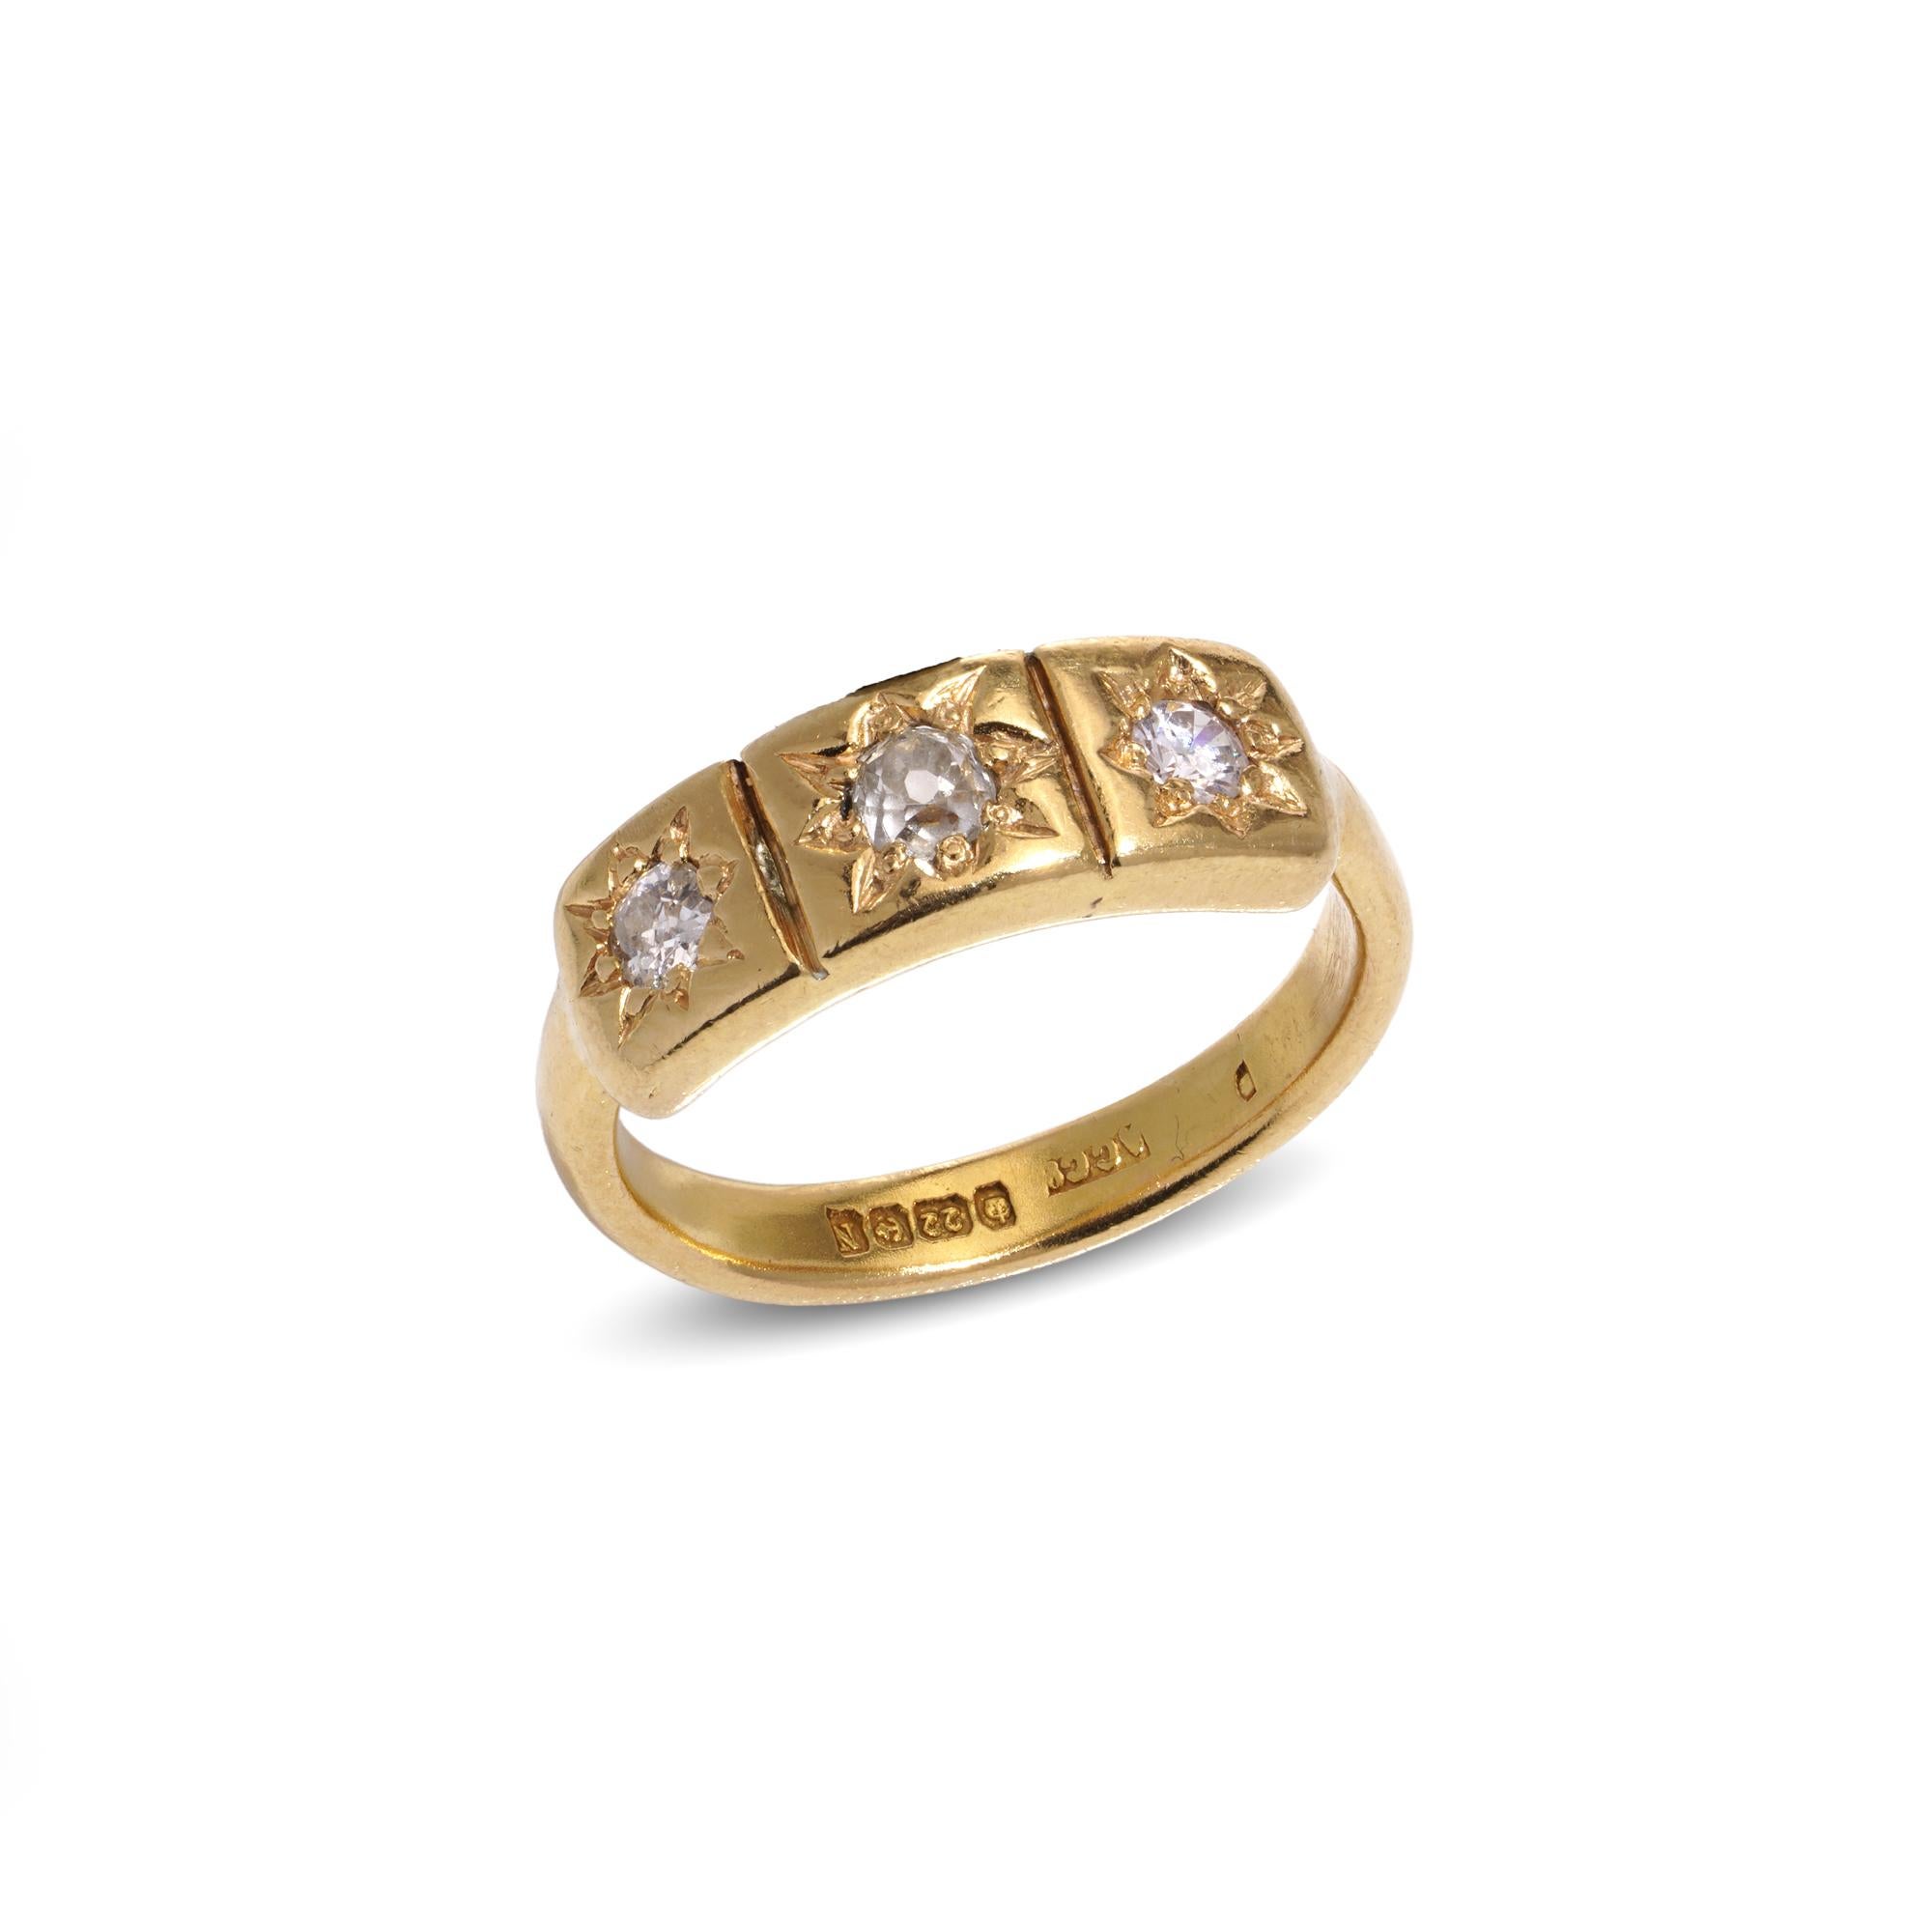 Dies ist ein dreisteiniger Diamantring im Vintage-Stil aus 22-karätigem Gelbgold. Die Diamanten sind elegant sternförmig angeordnet. Sie wurde Ende 1937 in Birmingham, England, hergestellt und trägt eine vollständige Punze, einschließlich der